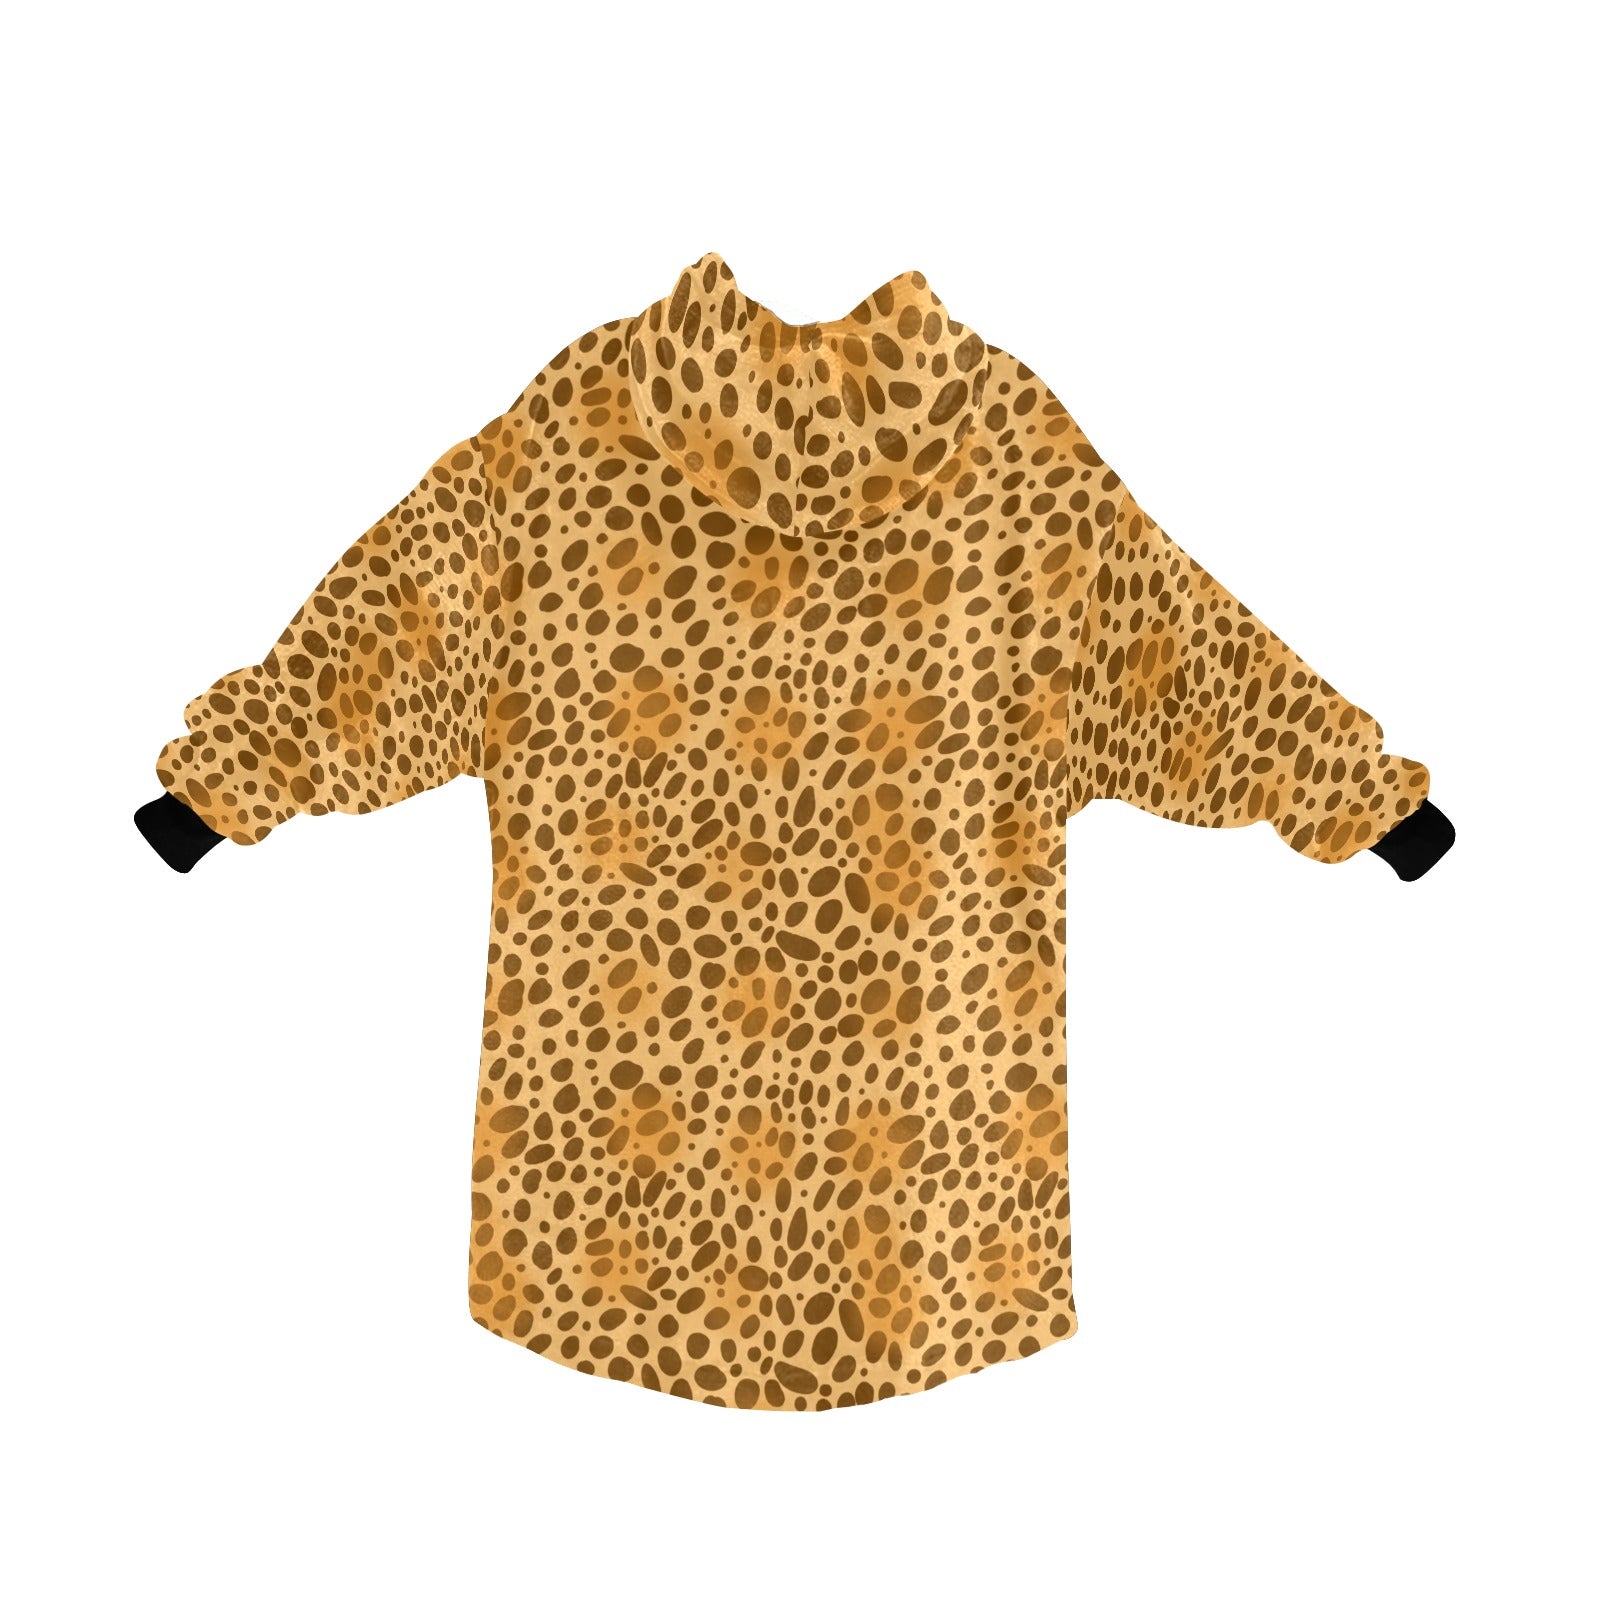 Leopard Print Oodie UK